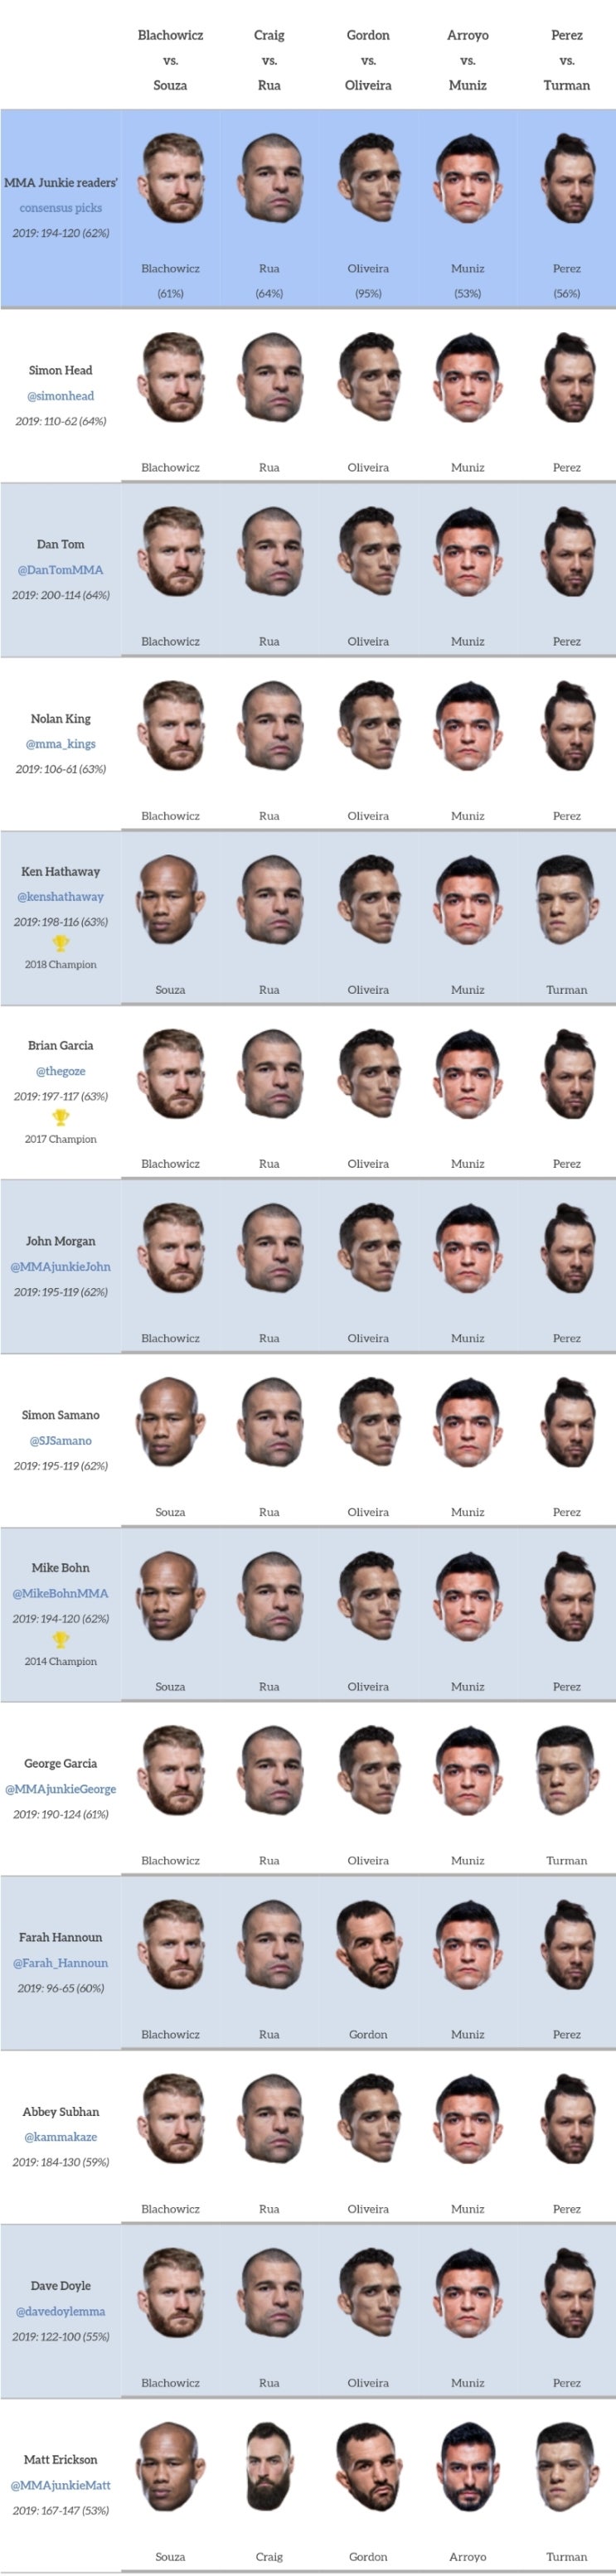 UFC 상 파울루 : 블라코비치 vs 자카레 미디어 예상 및 배당률